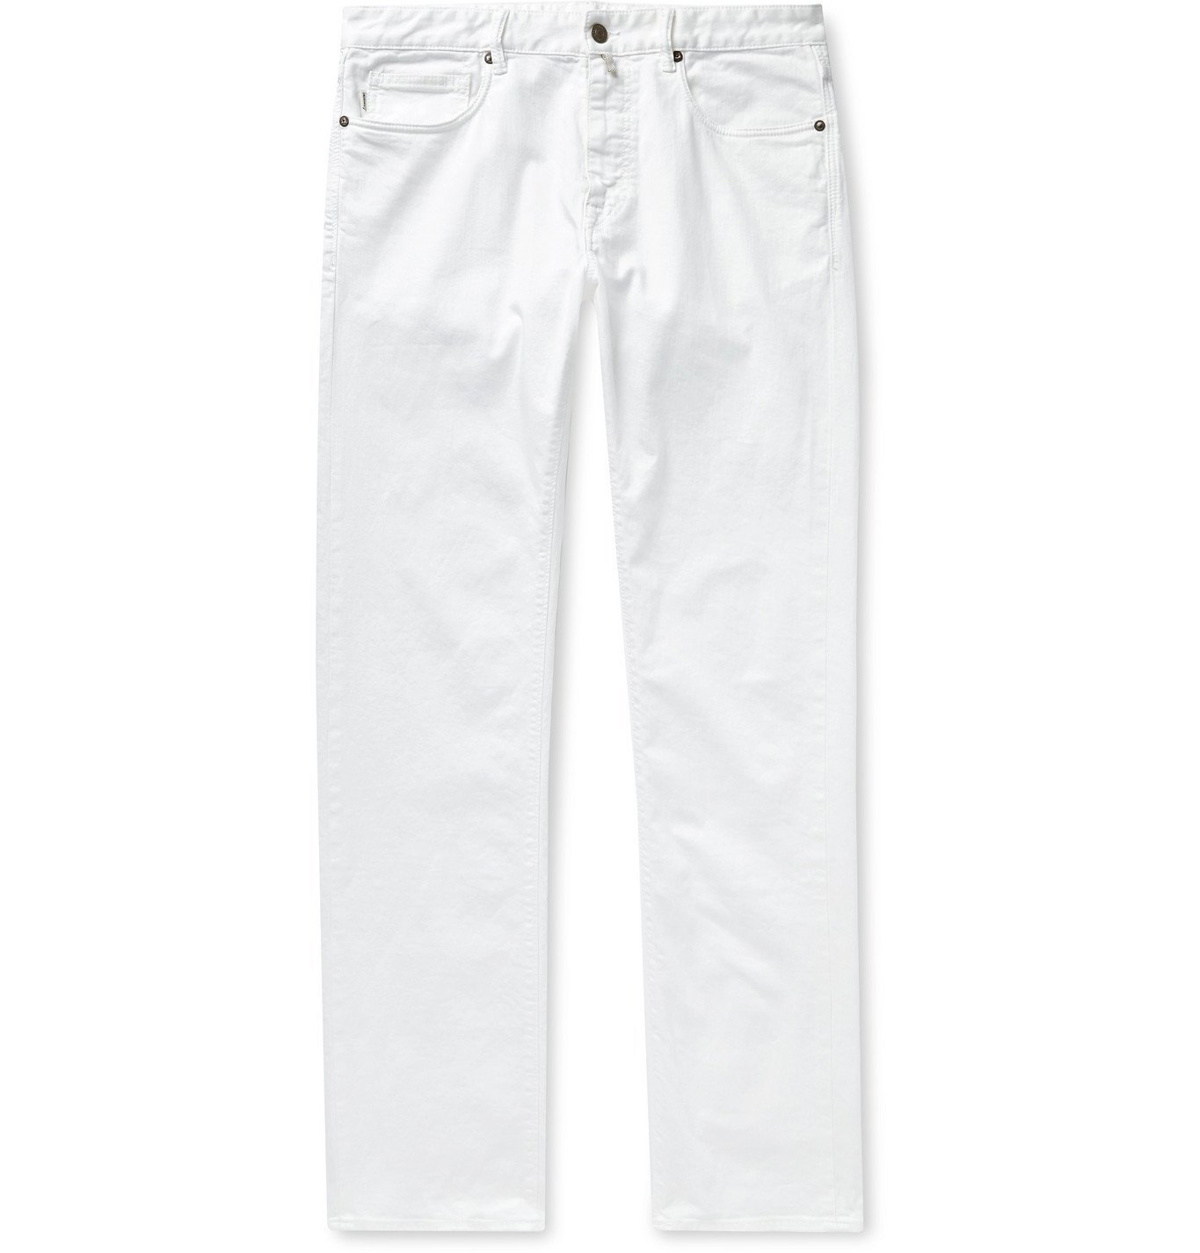 Incotex - Slim-Fit Jeans - White